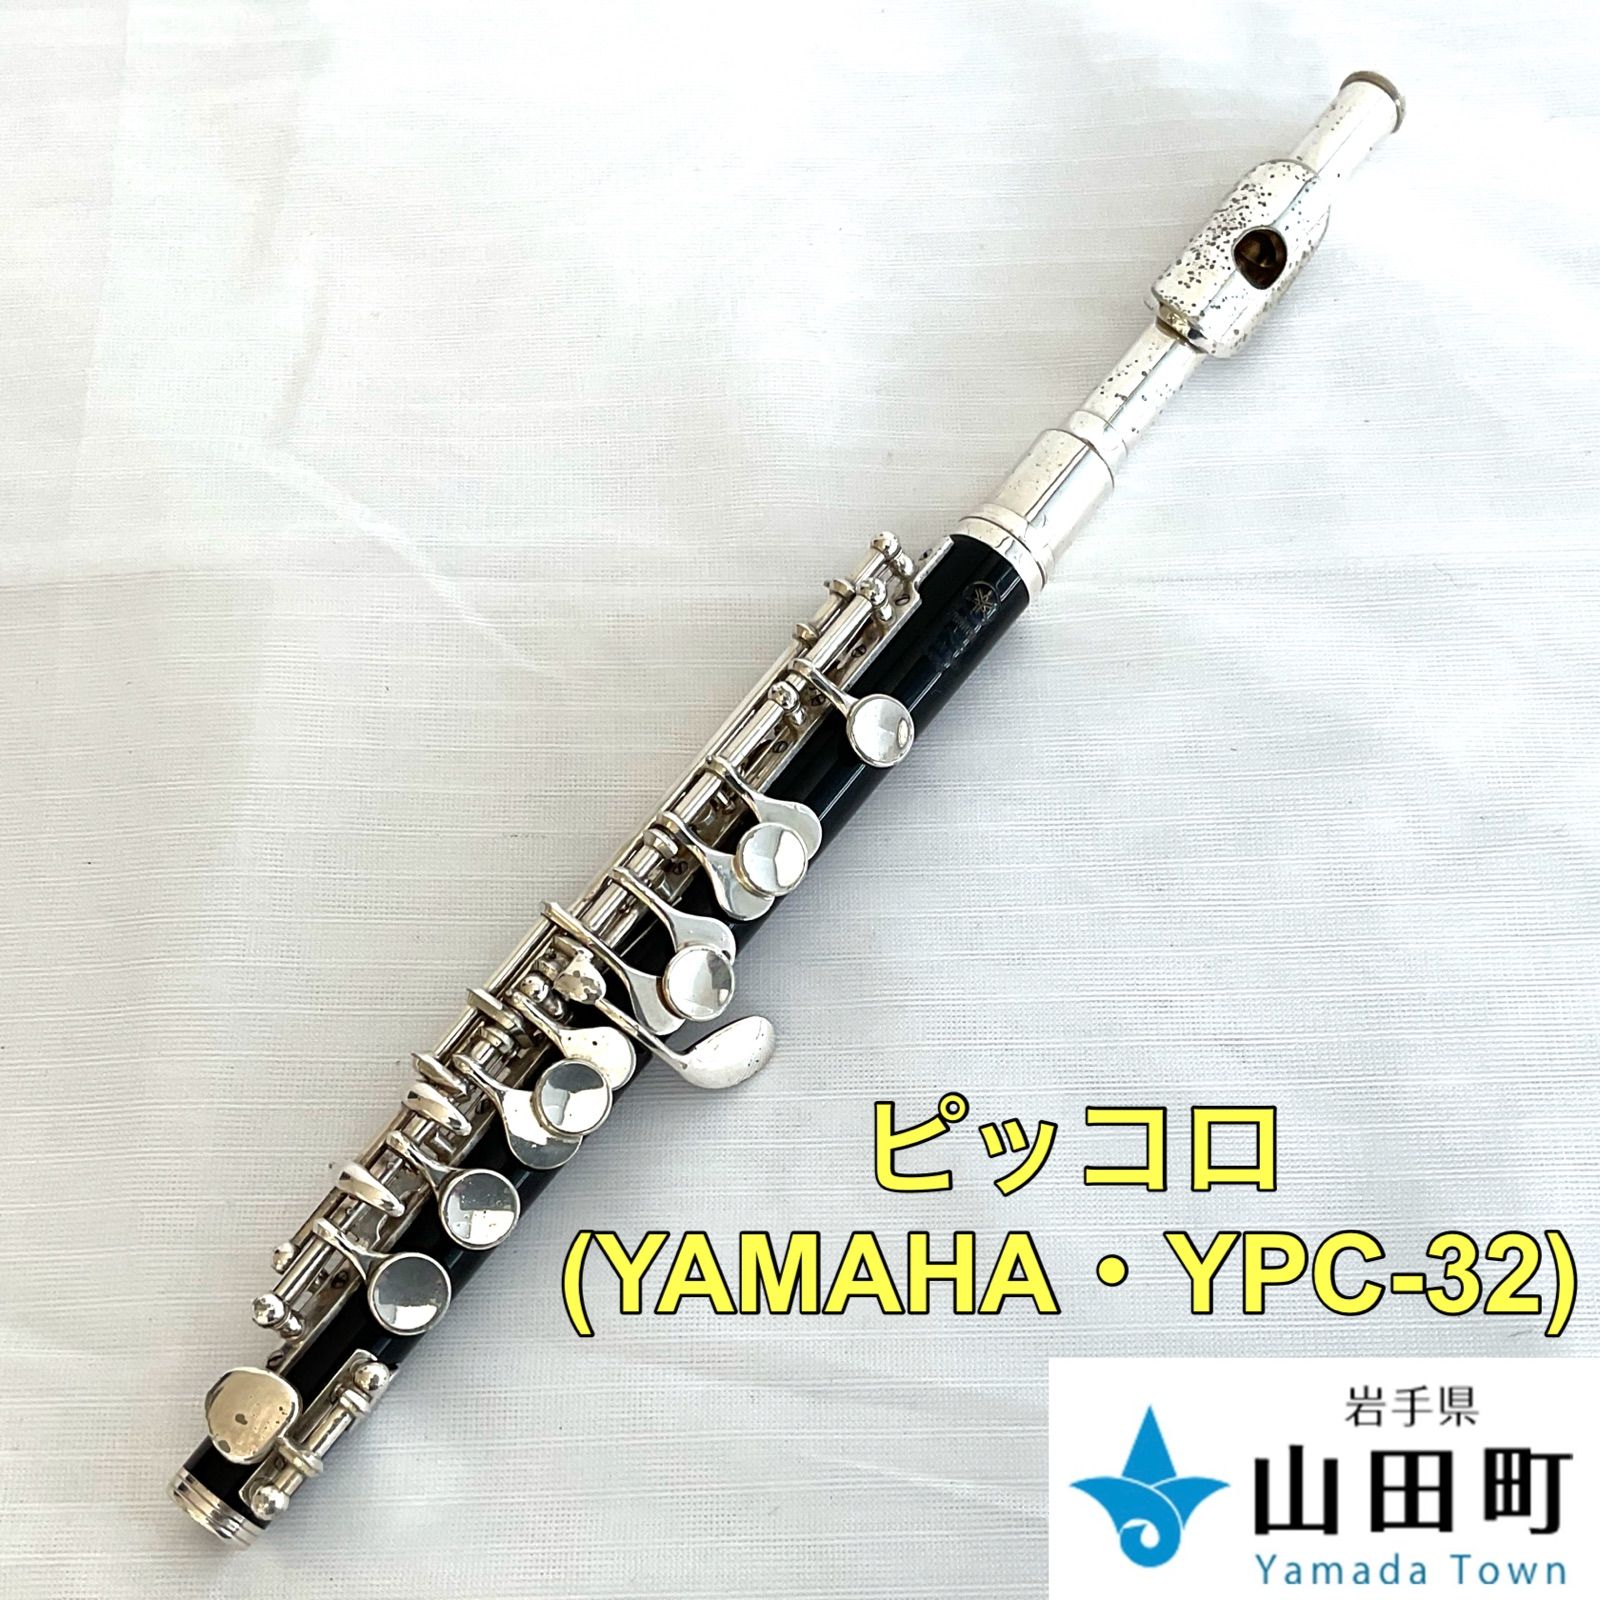 ピッコロ YAMAHA・YPC-32【tyc-021】 - 岩手県山田町役場 - メルカリ